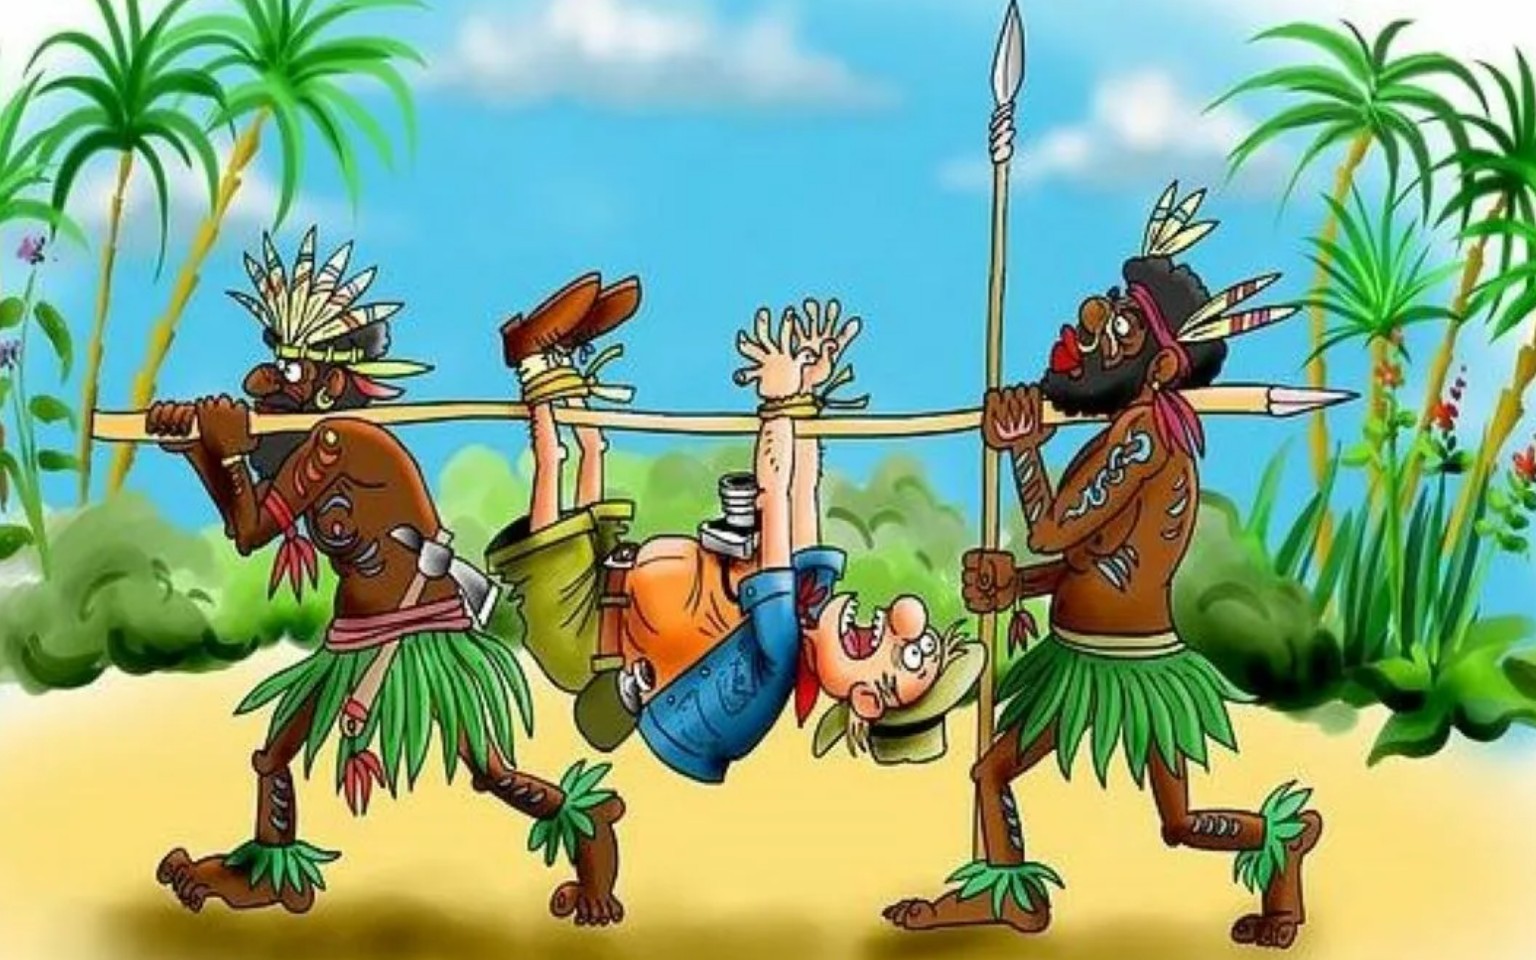 Имя добродушного людоеда. Карикатуры про аборигенов. Папуасы новой Гвинеи.